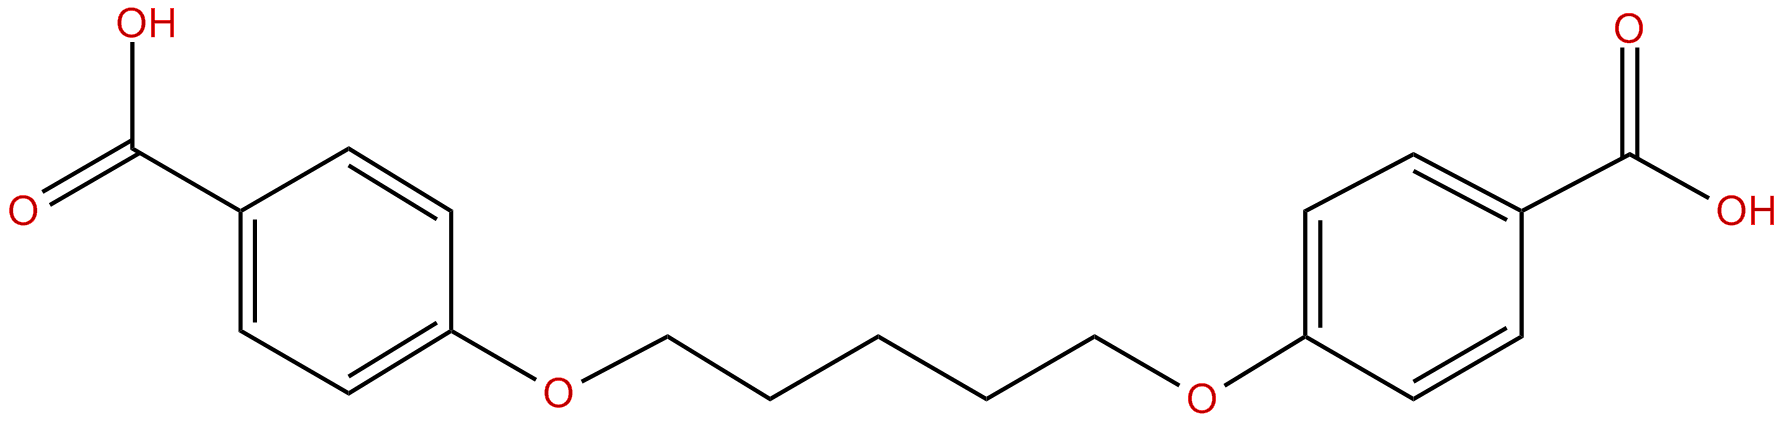 Image of 4,4'-[1,2-pentanediylbis(oxy)]bis(benzoic acid)